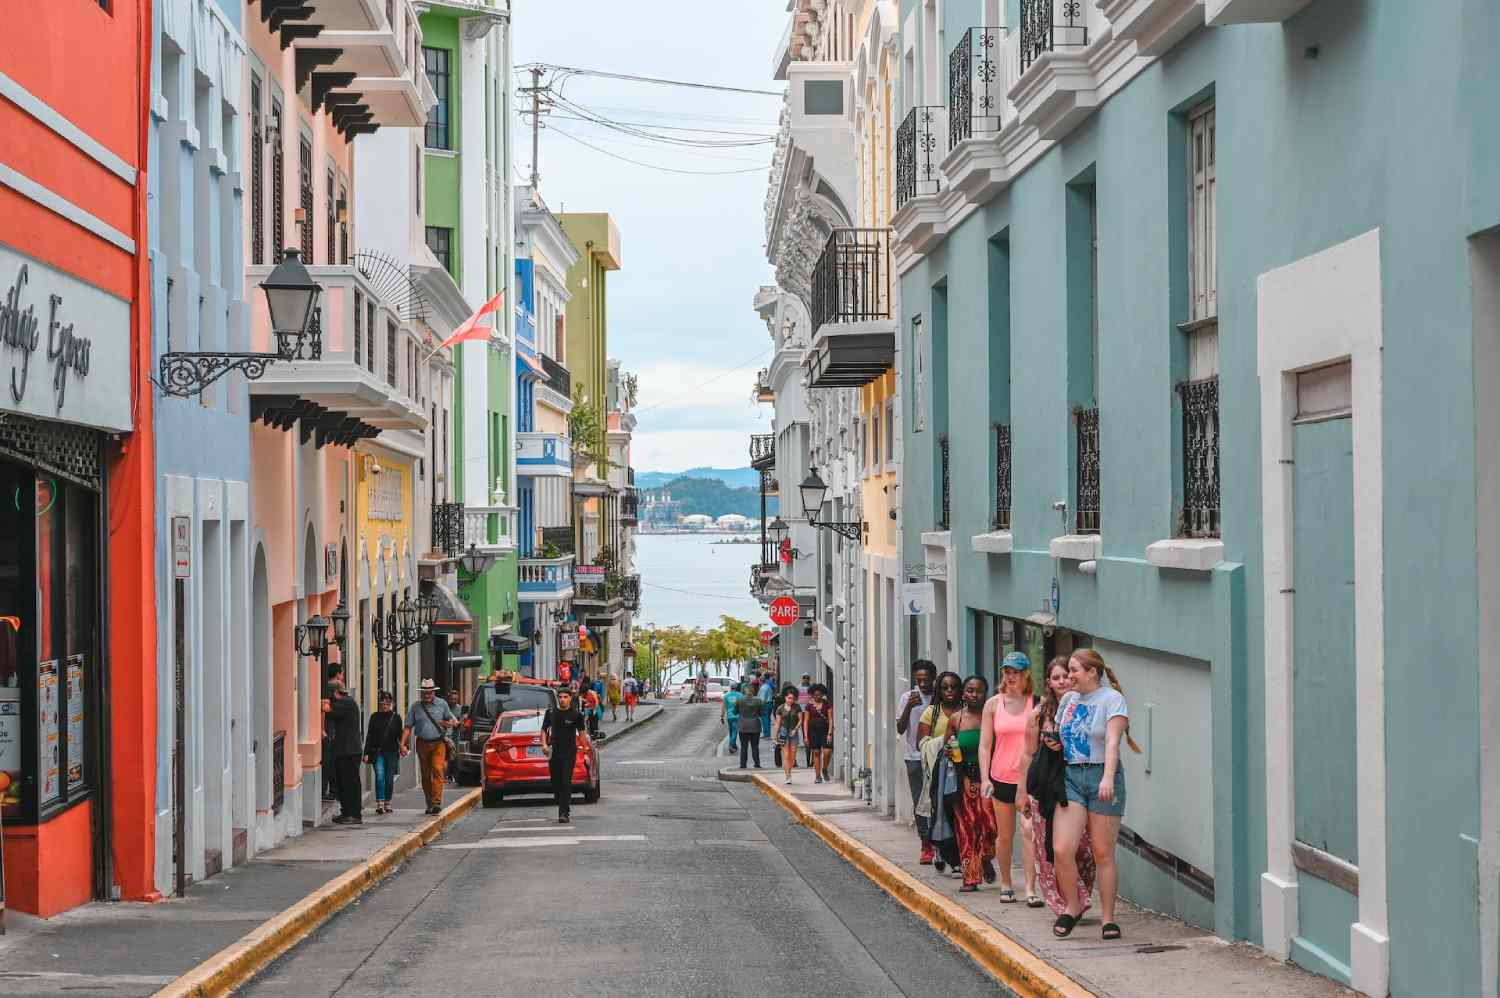 Downtown San Juan, Puerto Rico